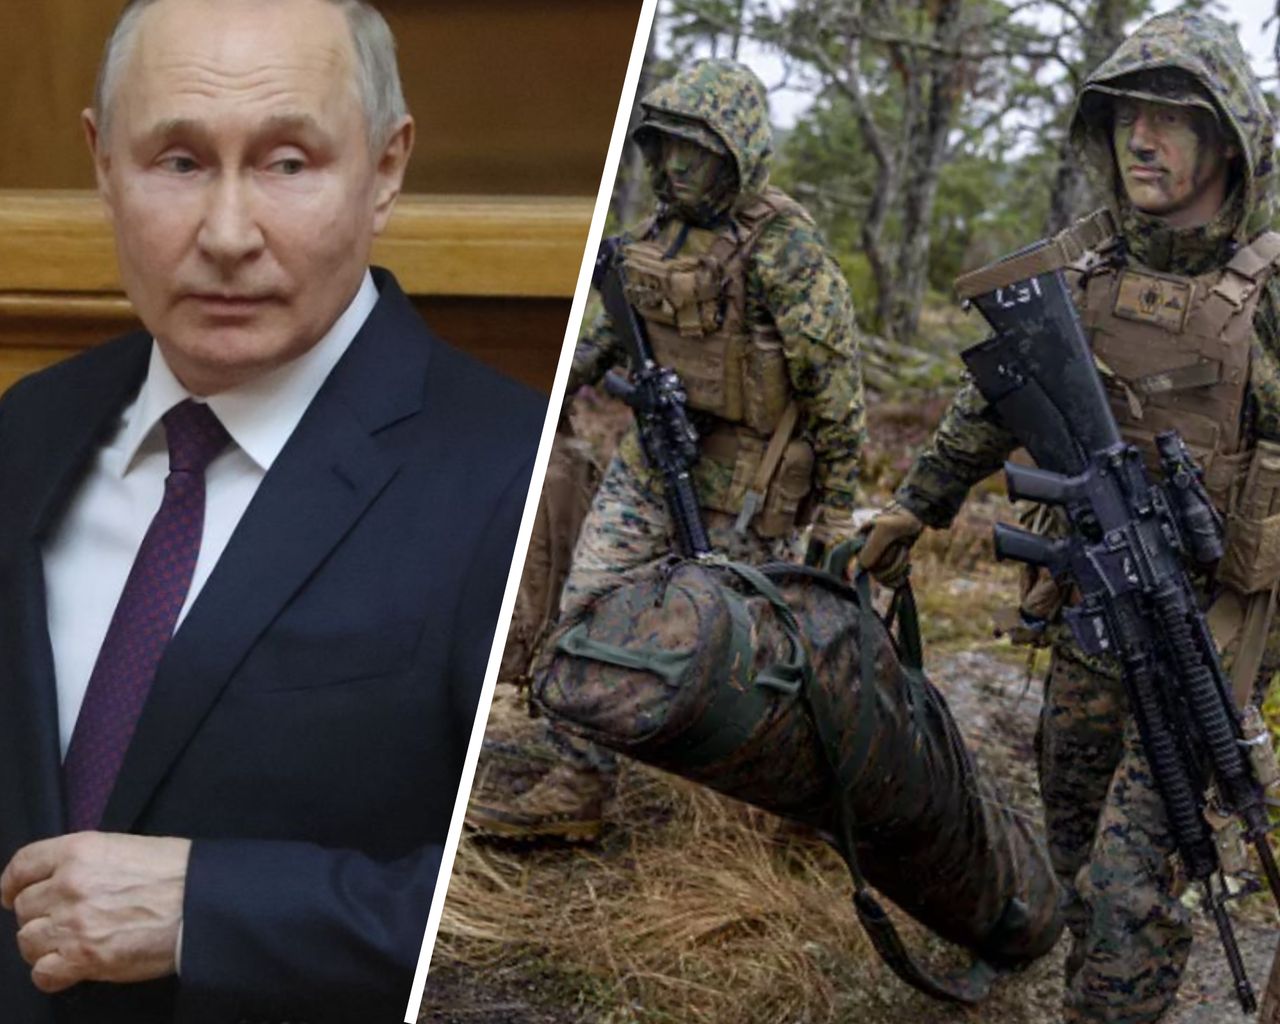 Szwecja obawia się rosyjskiego ataku. "Czas się spieszyć"